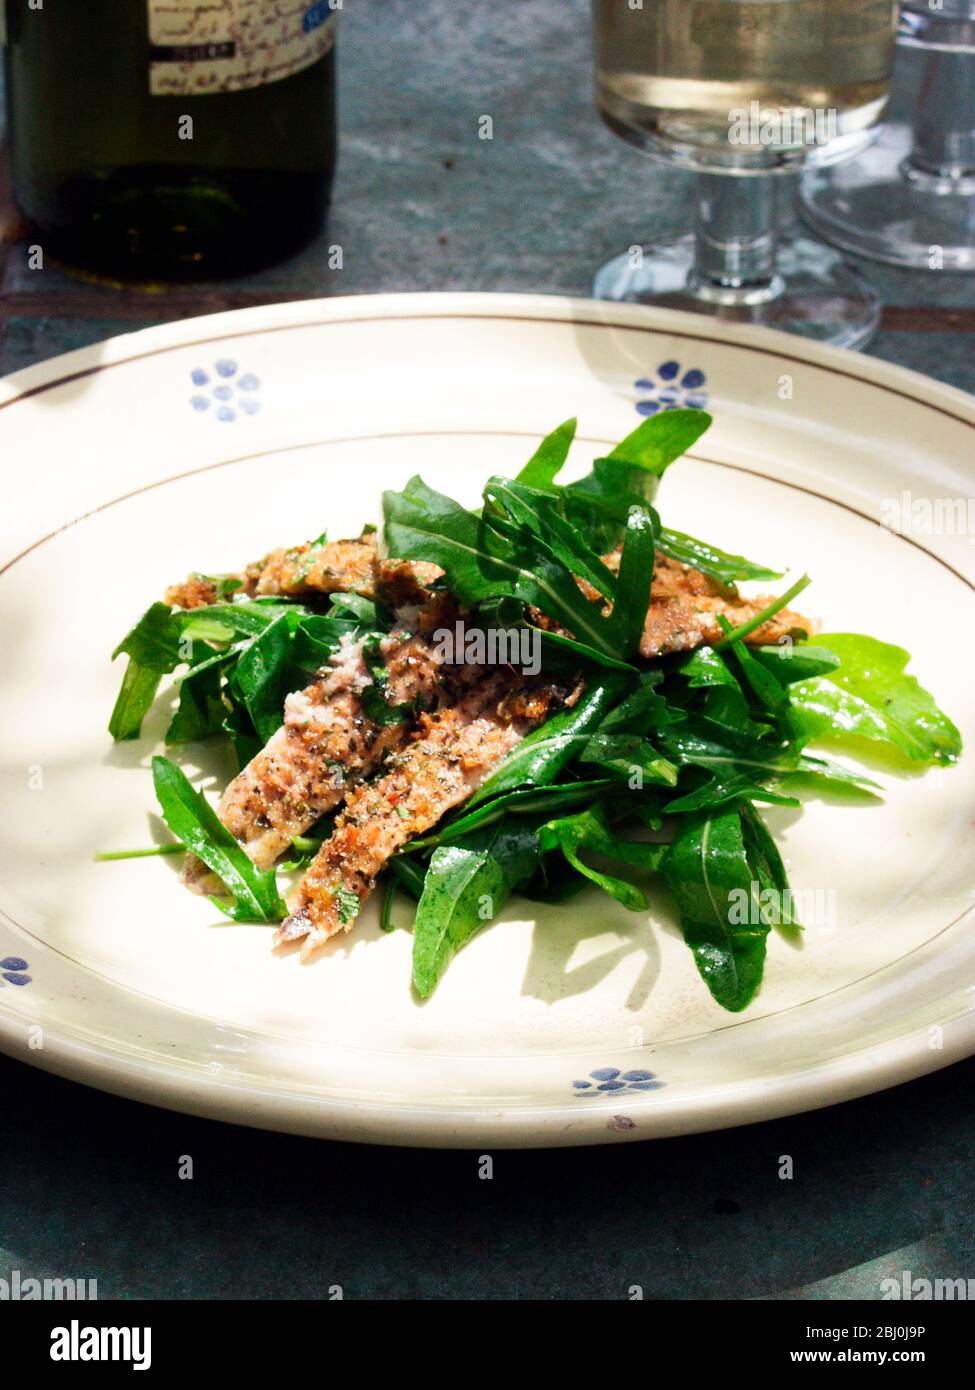 Vorspeise aus pangebratenen Sardellenfilets mit Rucola-Salat, serviert im Freien, bei Sonnenschein mit Wein - Stockfoto